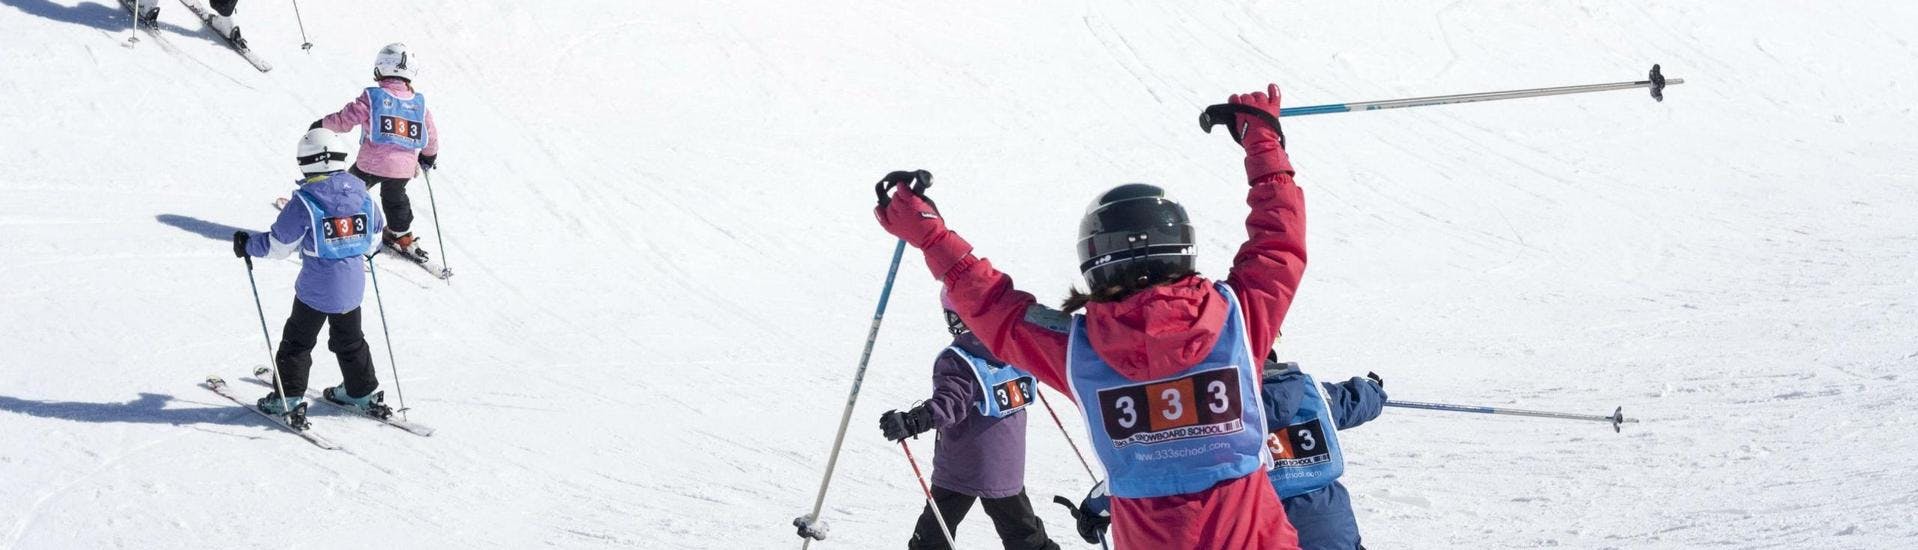 Un gruppo di amici sta beneficiando del programma su misura delle Lezioni private di sci per bambini - Val d'Isère preparato dalla 333 Ski School.